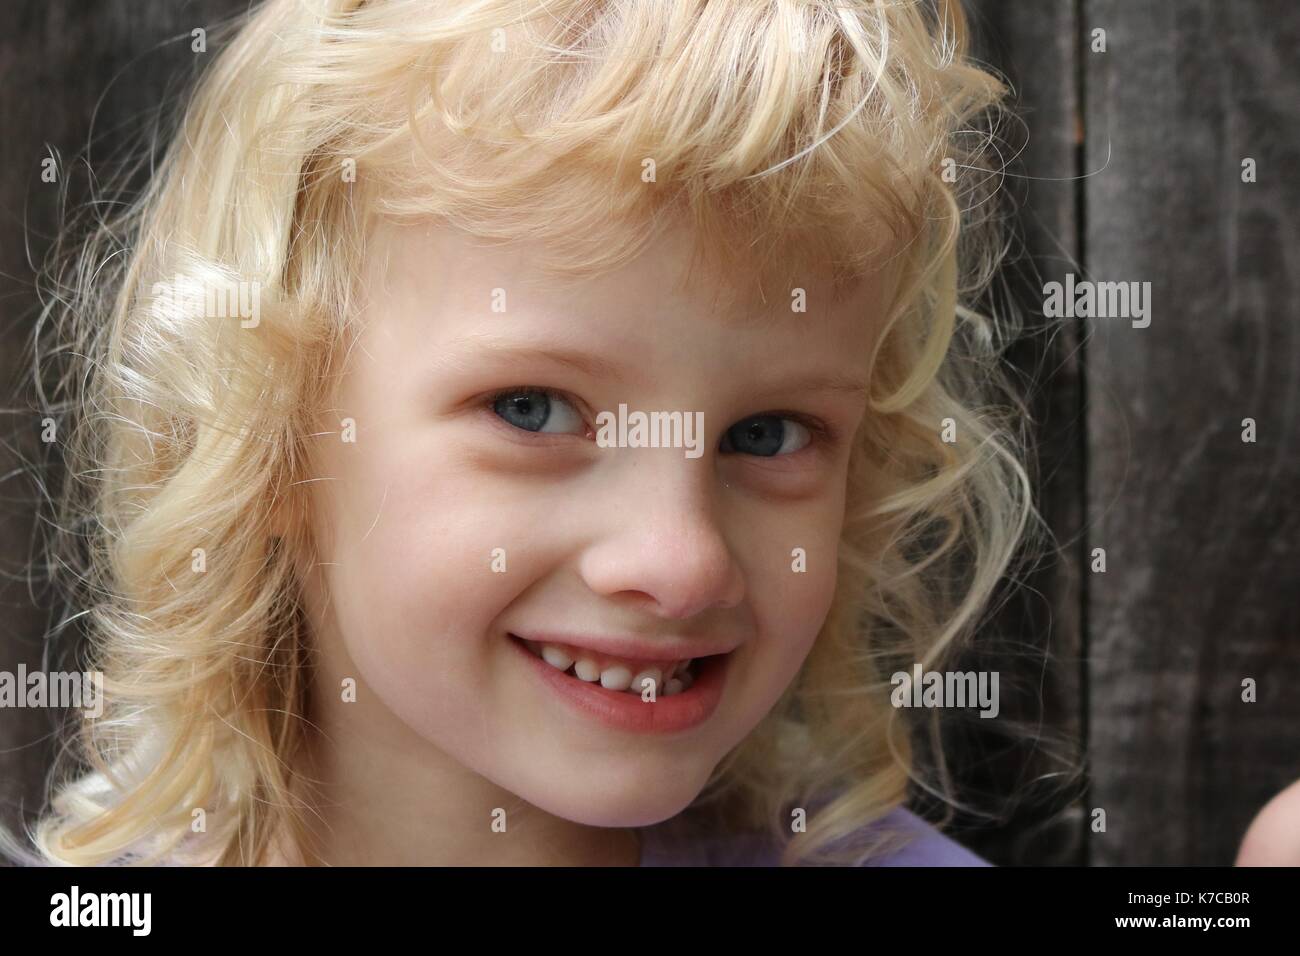 Portrait d'une jeune fille blonde avec un sourire malicieux Banque D'Images